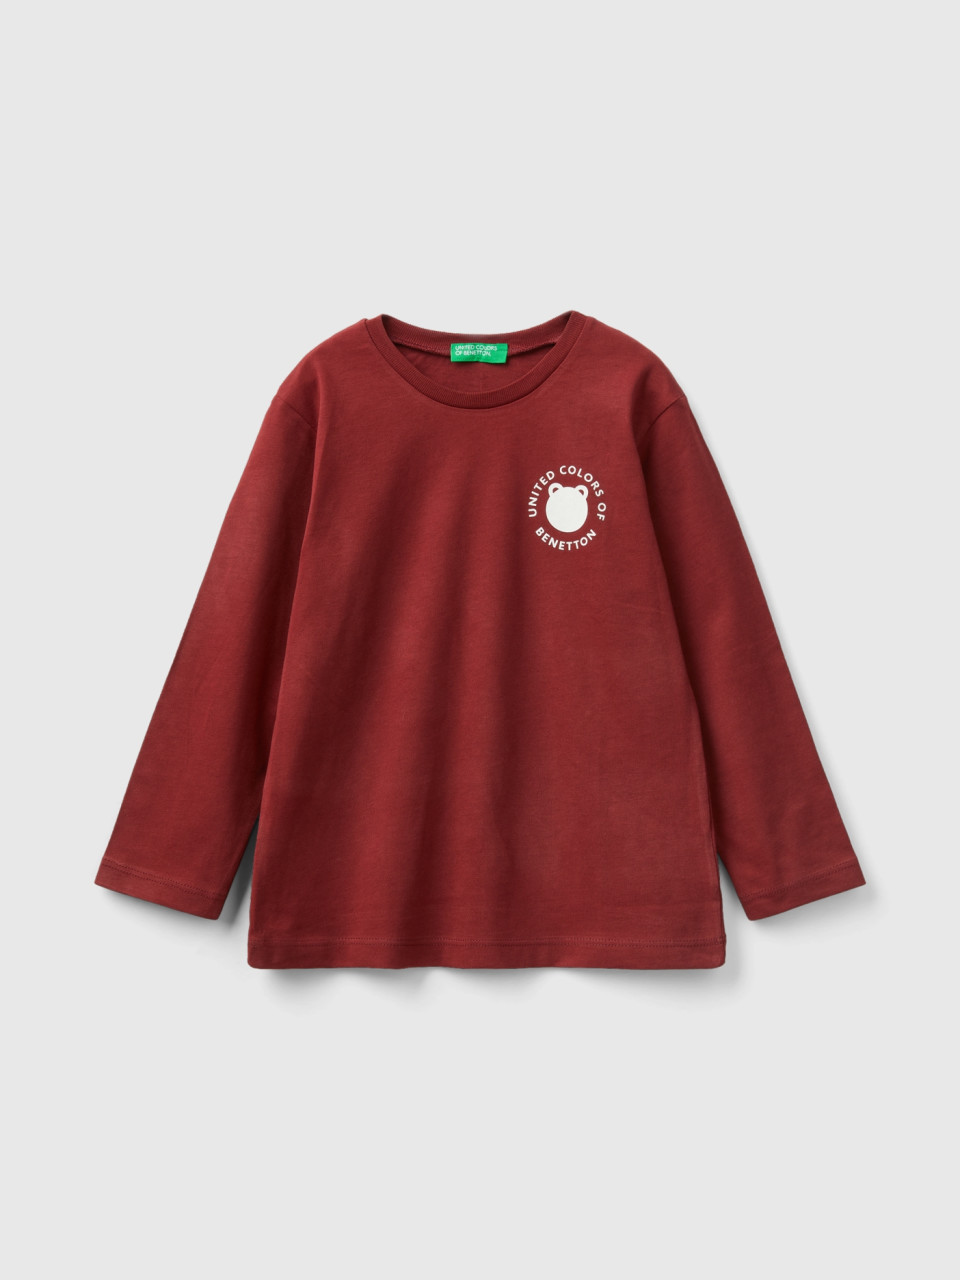 Benetton, Crew Neck T-shirt In Warm Organic Cotton, Burgundy, Kids